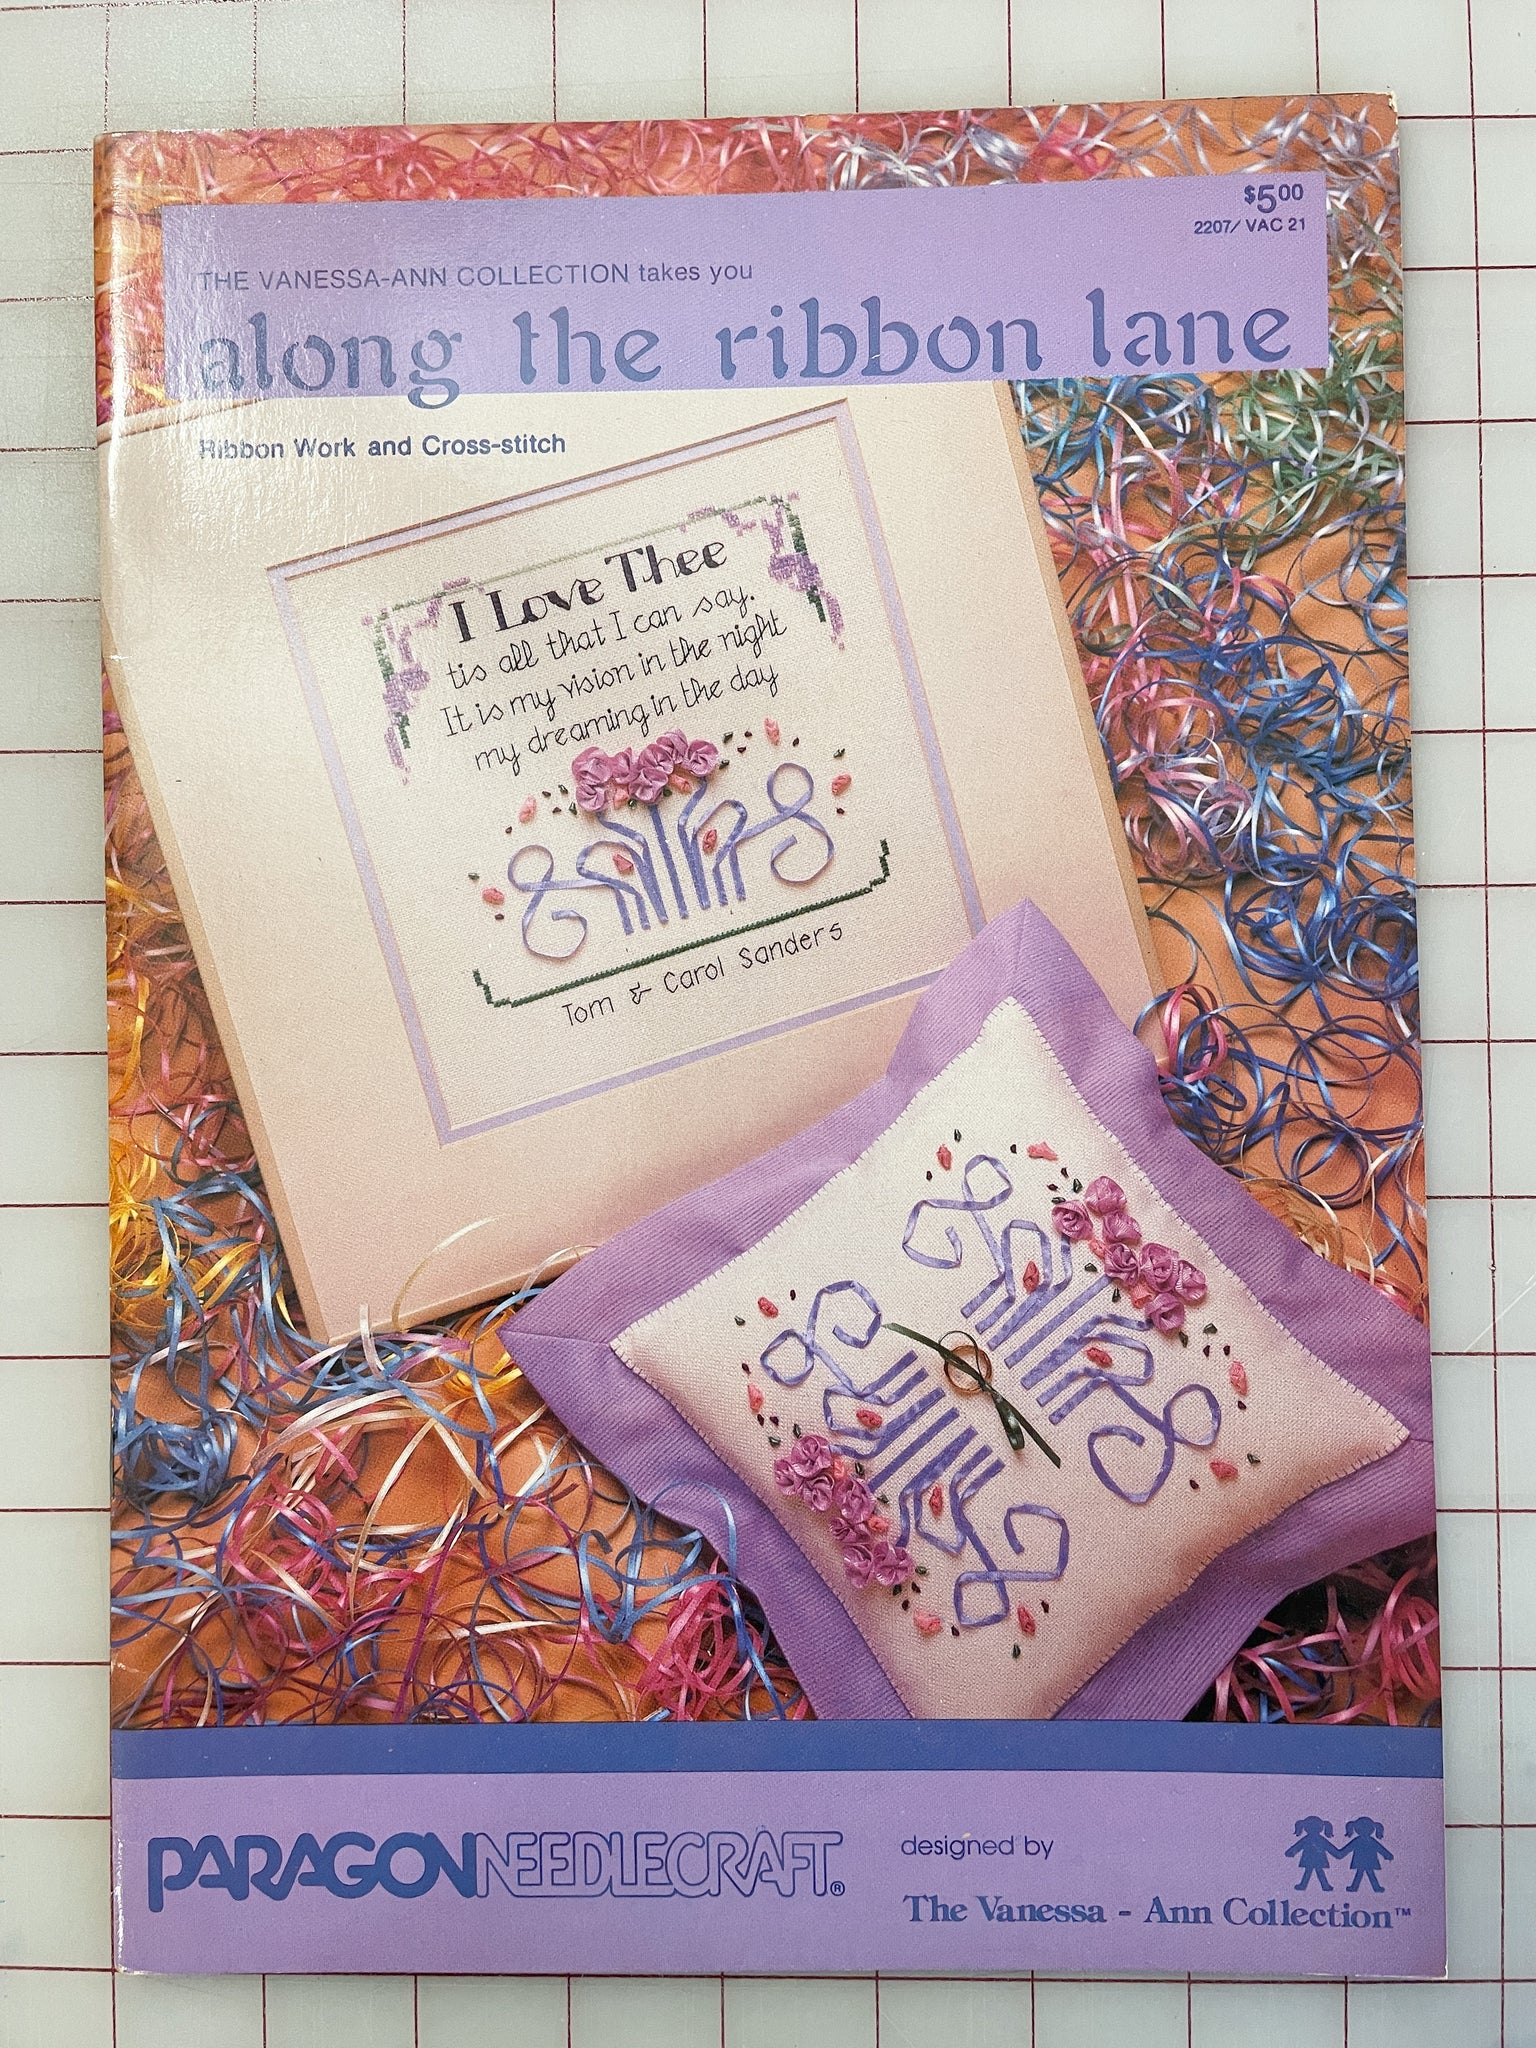 1984 Ribbon Embroidery and Cross Stitch Pattern Book - "Along the Ribbon Lane"